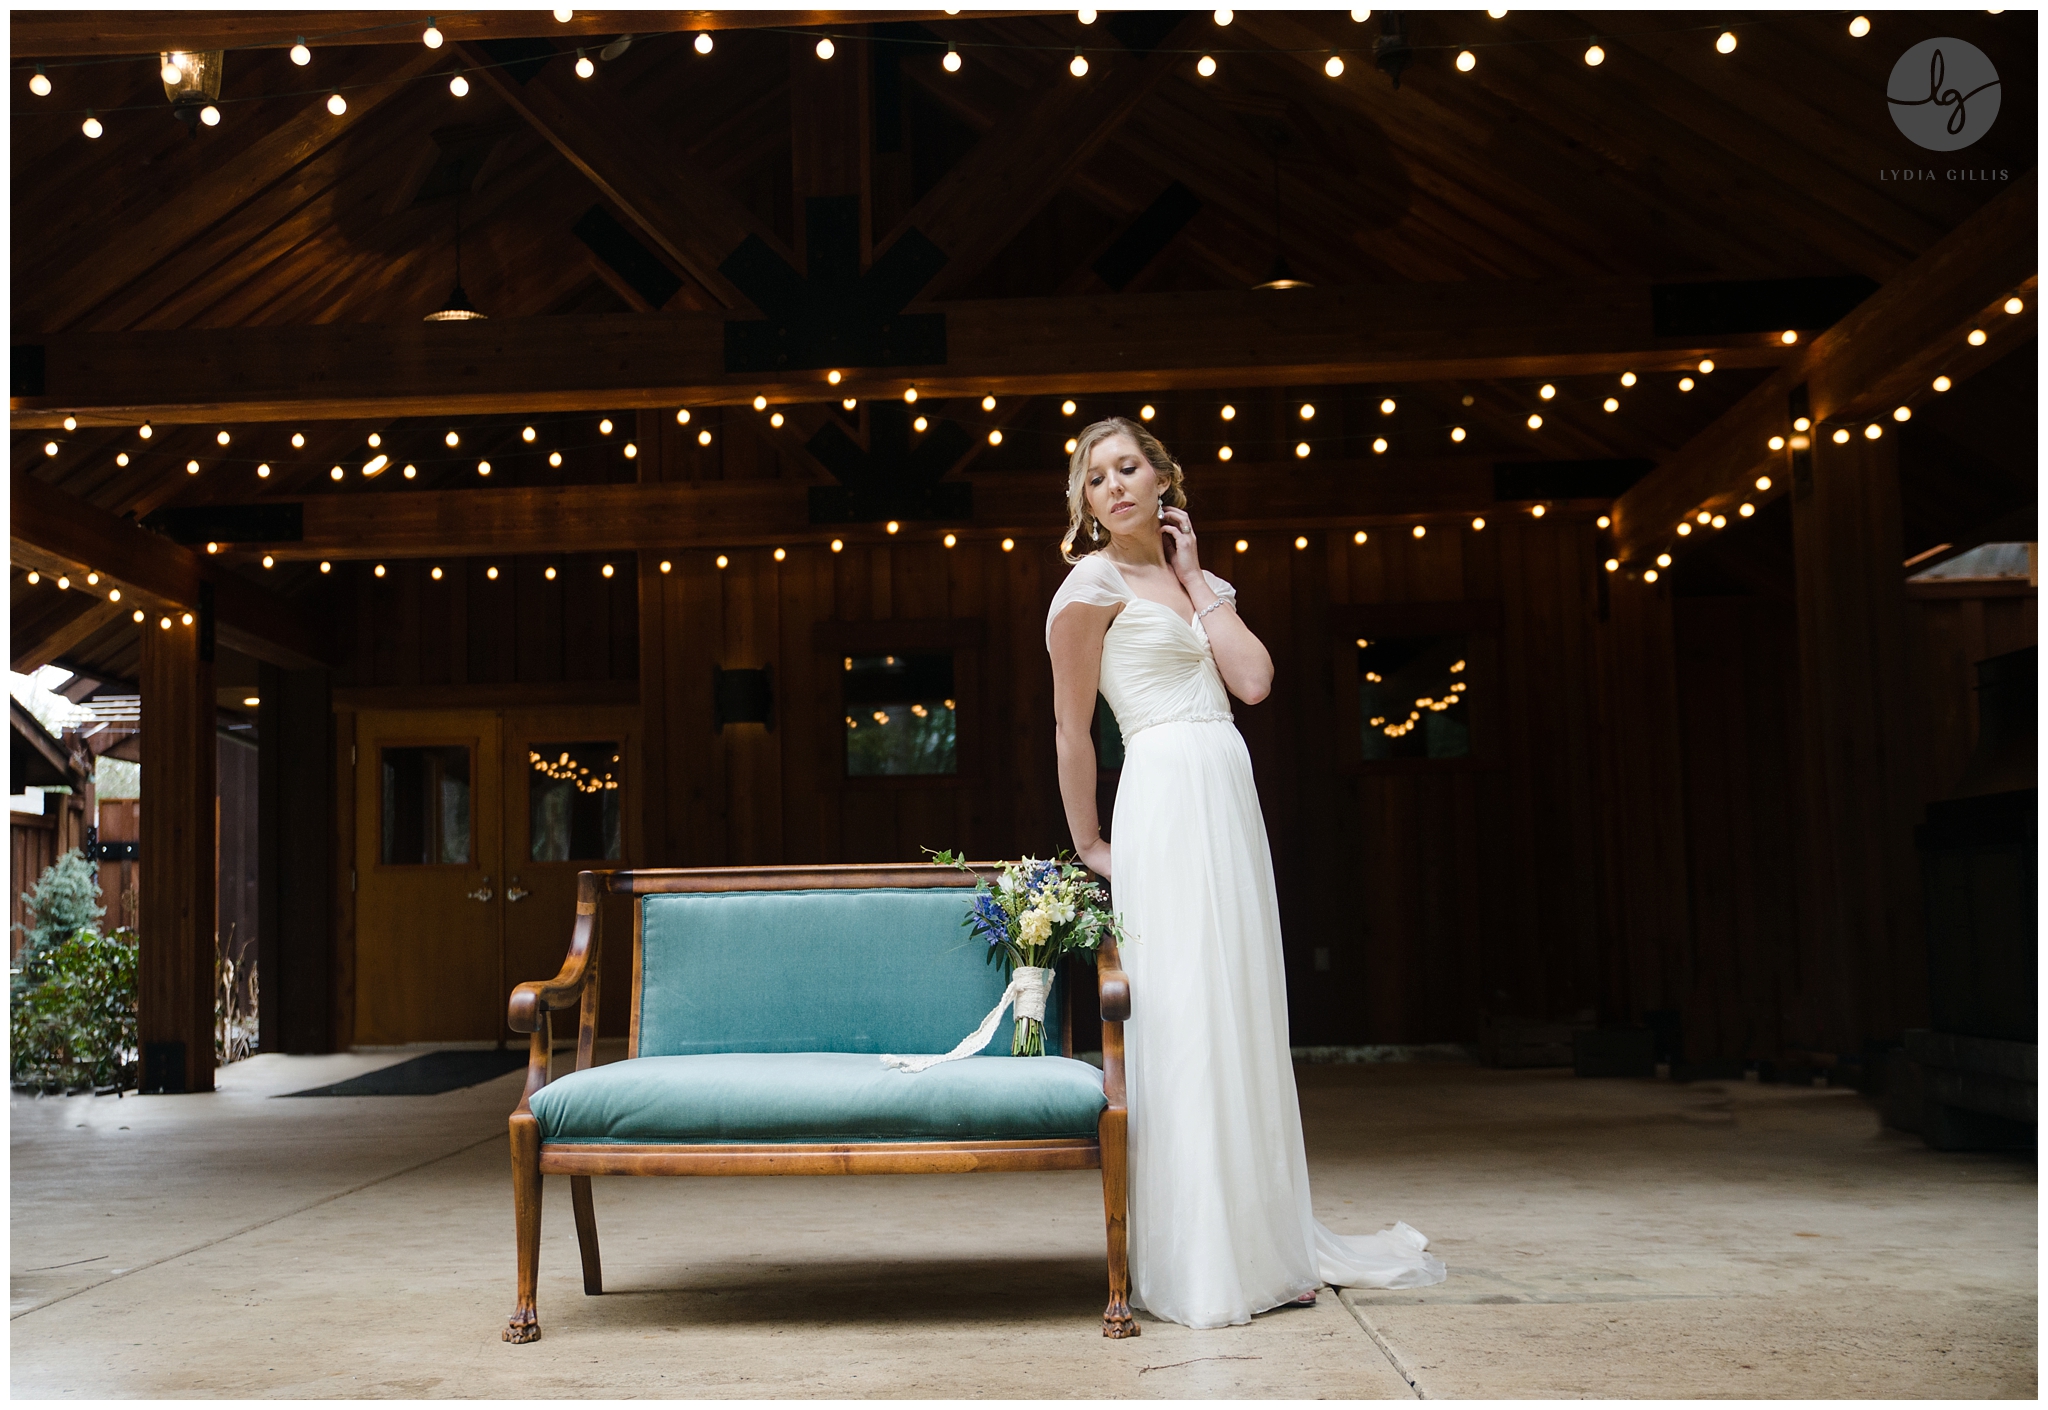 eugene wedding rental, teal velvet chair. Eugene wedding photographer, Lydia Gillis